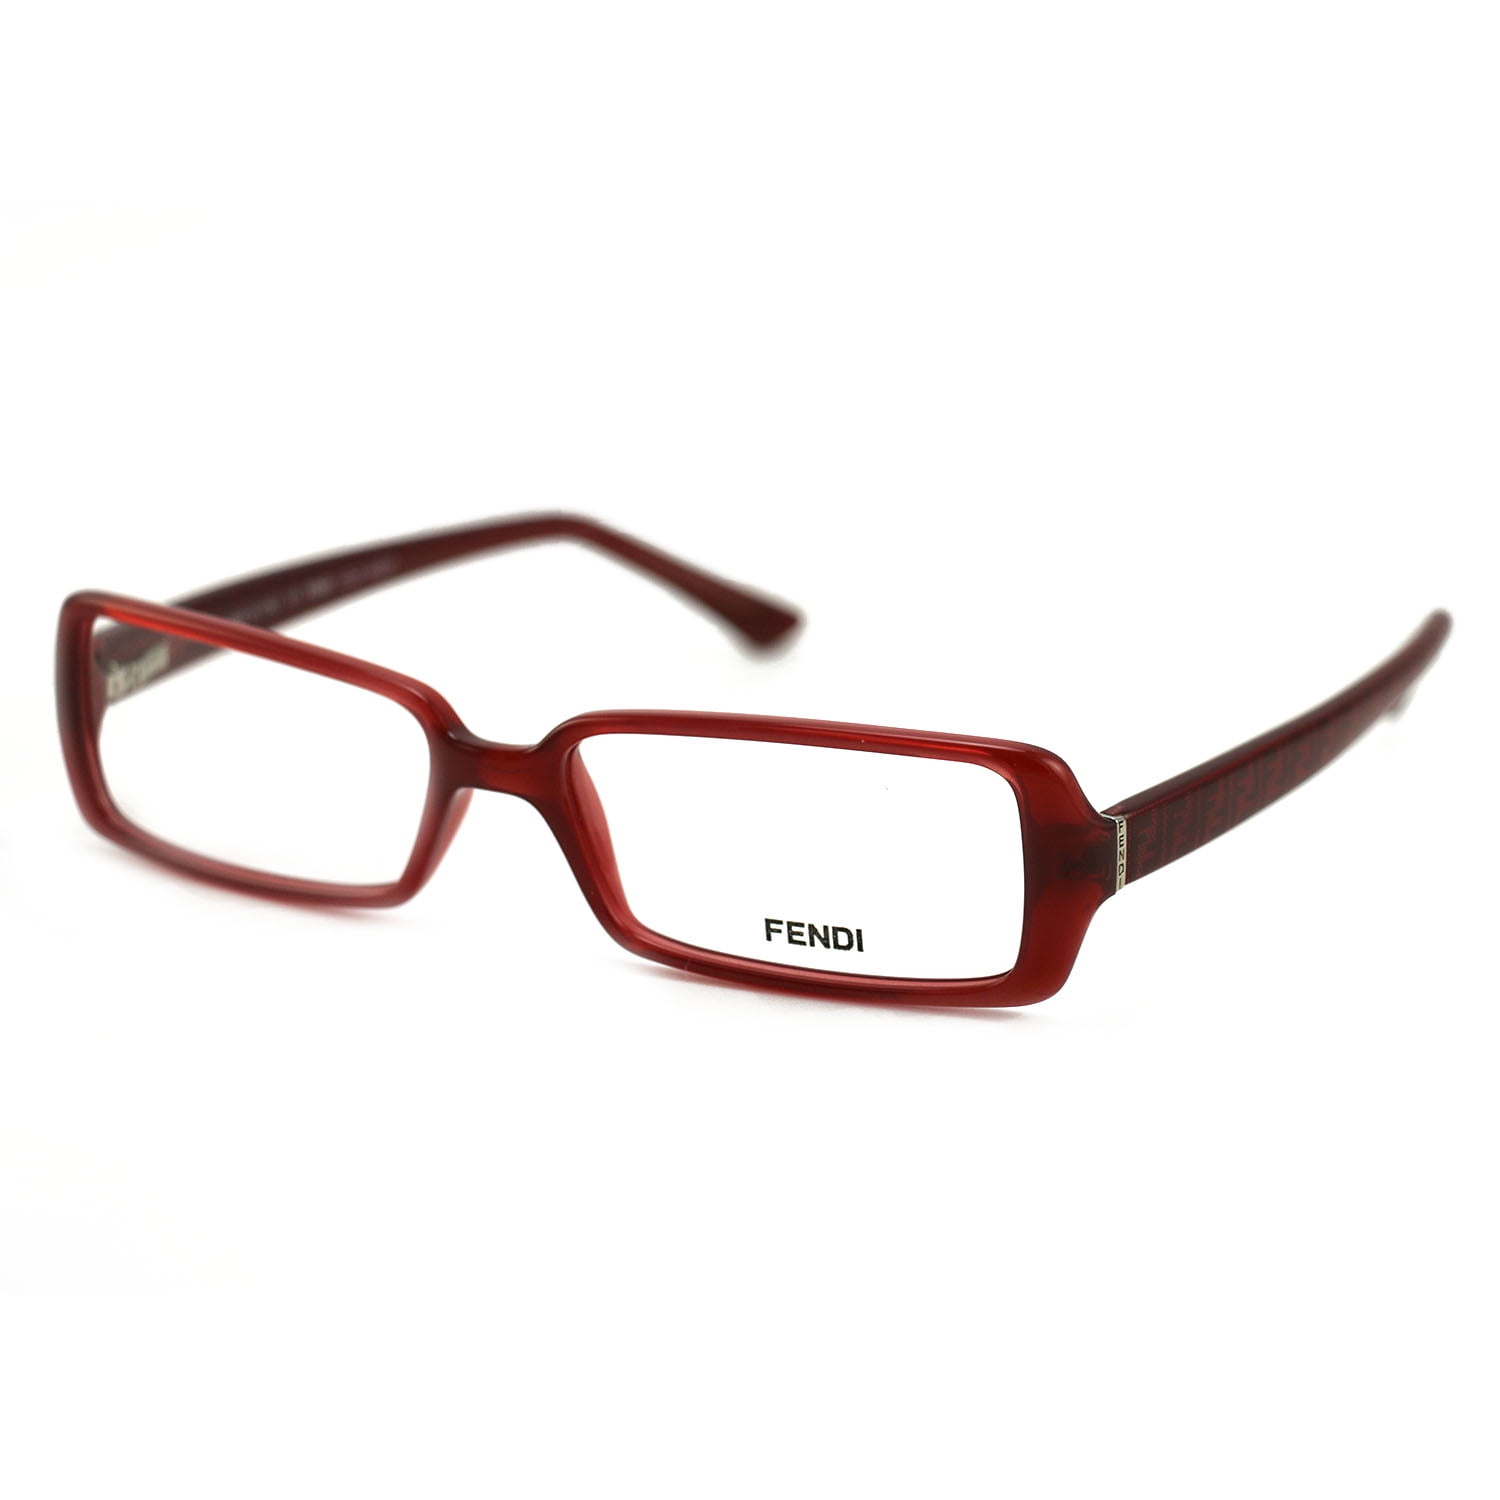 Fendi Women's Eyeglasses FF 882 608 Red Frame Glasses 52 15 135 ...